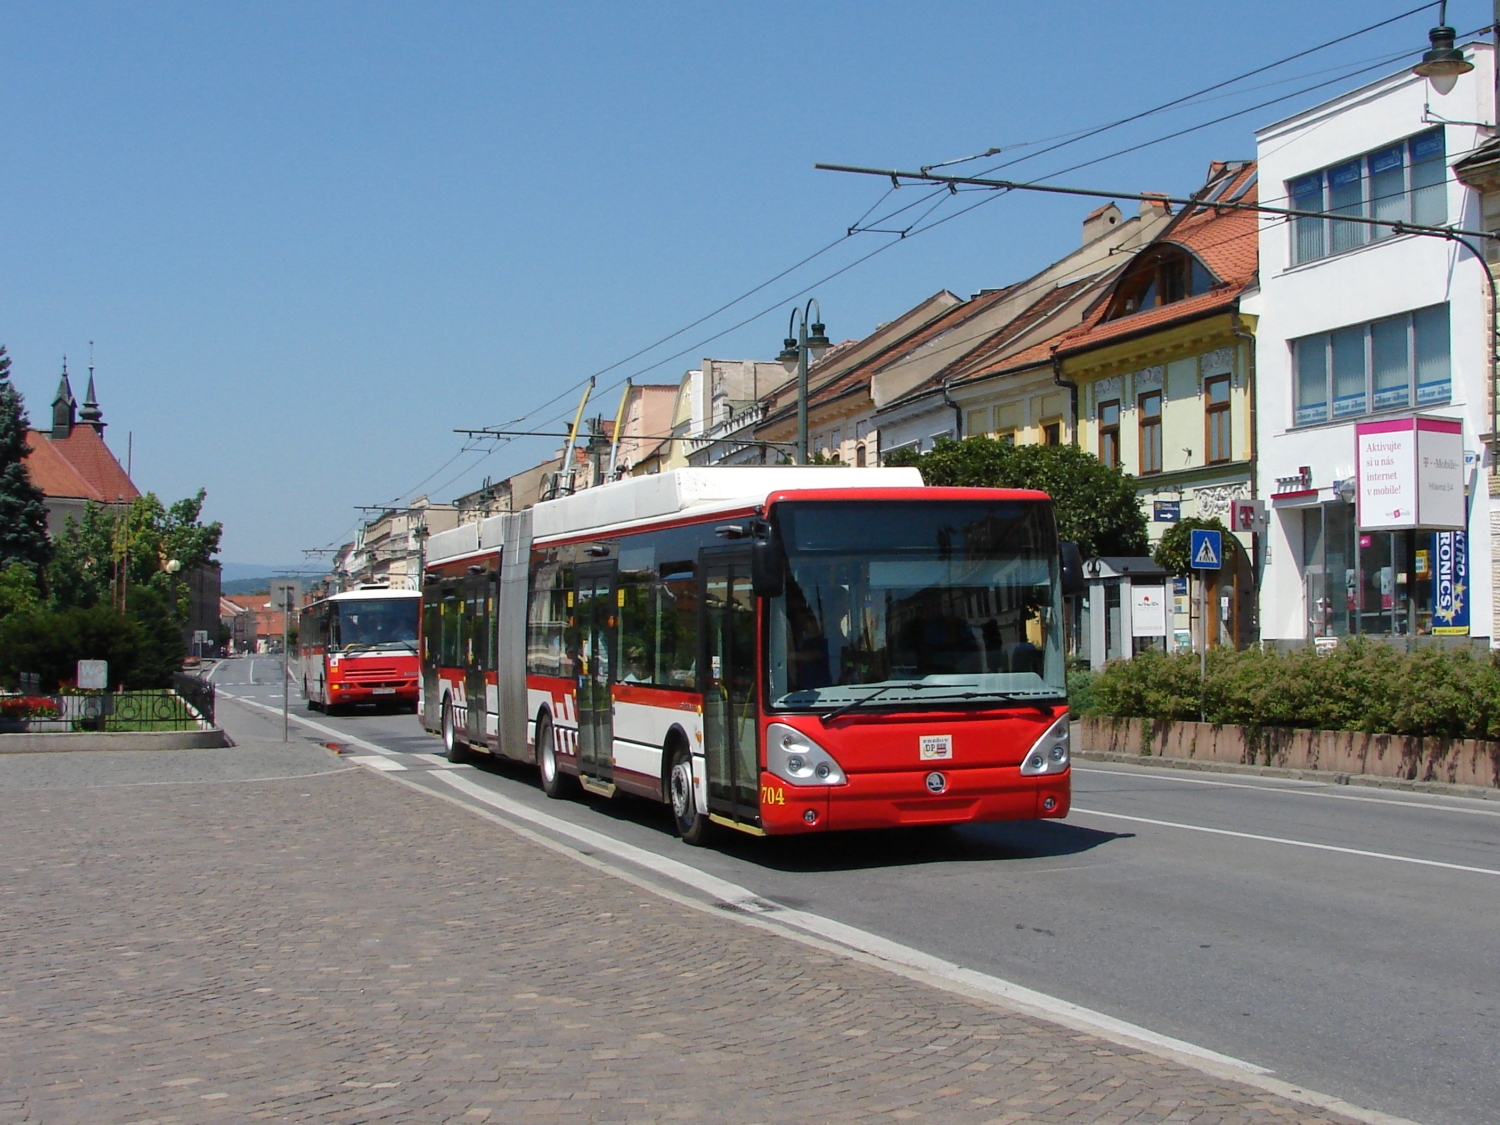 Trolejbus Škoda 25 Tr ev. č. 704 zachycený v centrum Prešova dne 17. 7. 2007. (foto: Libor Hinčica)